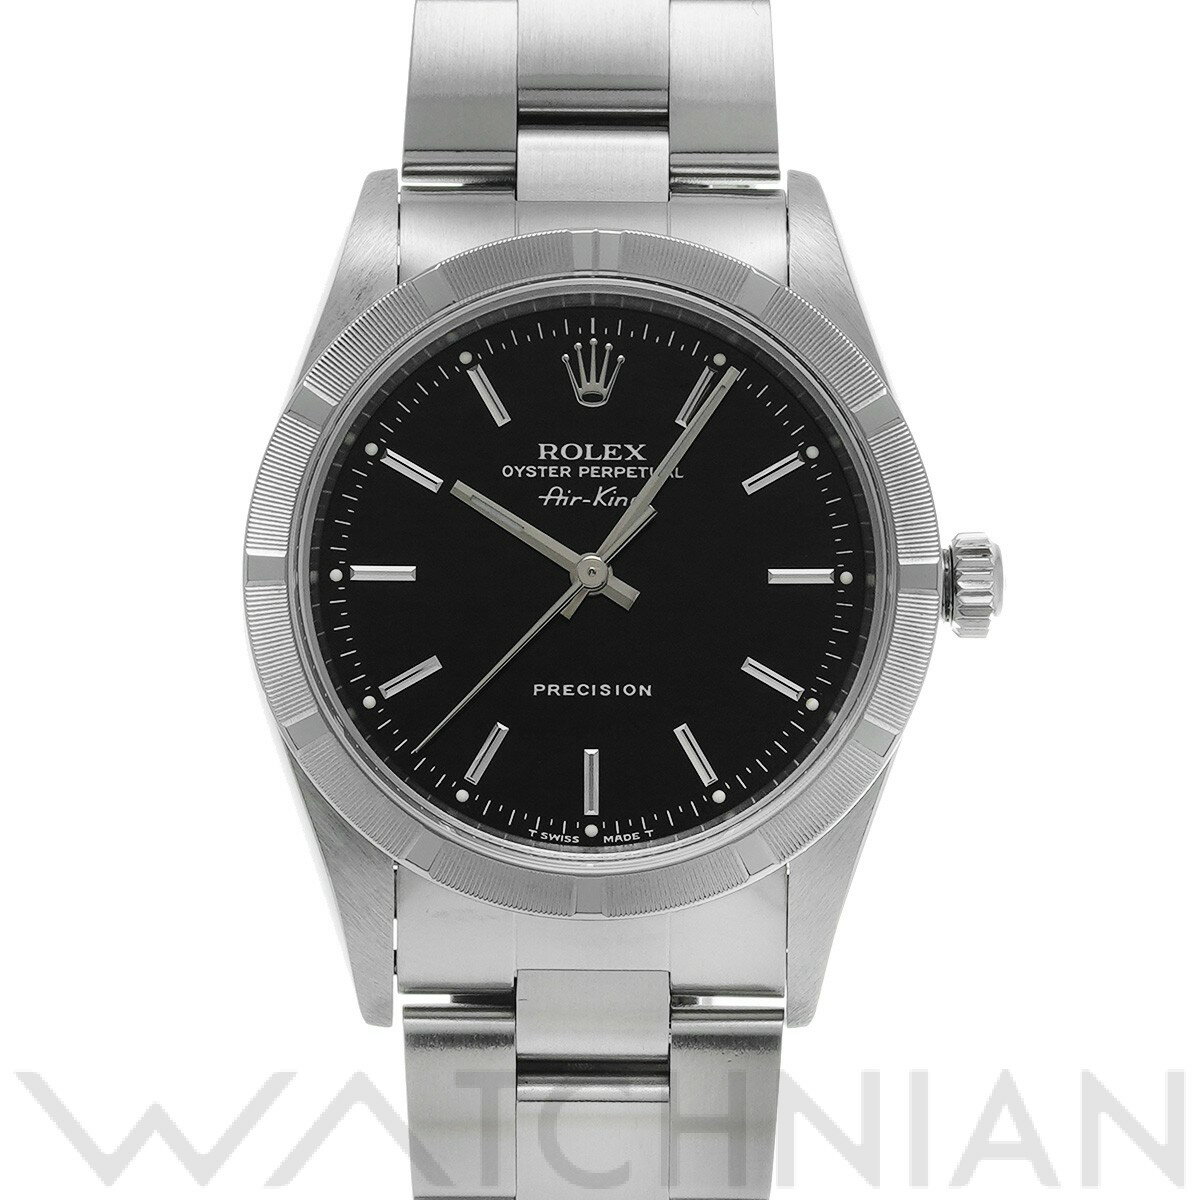 【ローン60回払い無金利】【中古】 ロレックス ROLEX エアキング 14010 U番(1997年頃製造) ブラック メンズ 腕時計